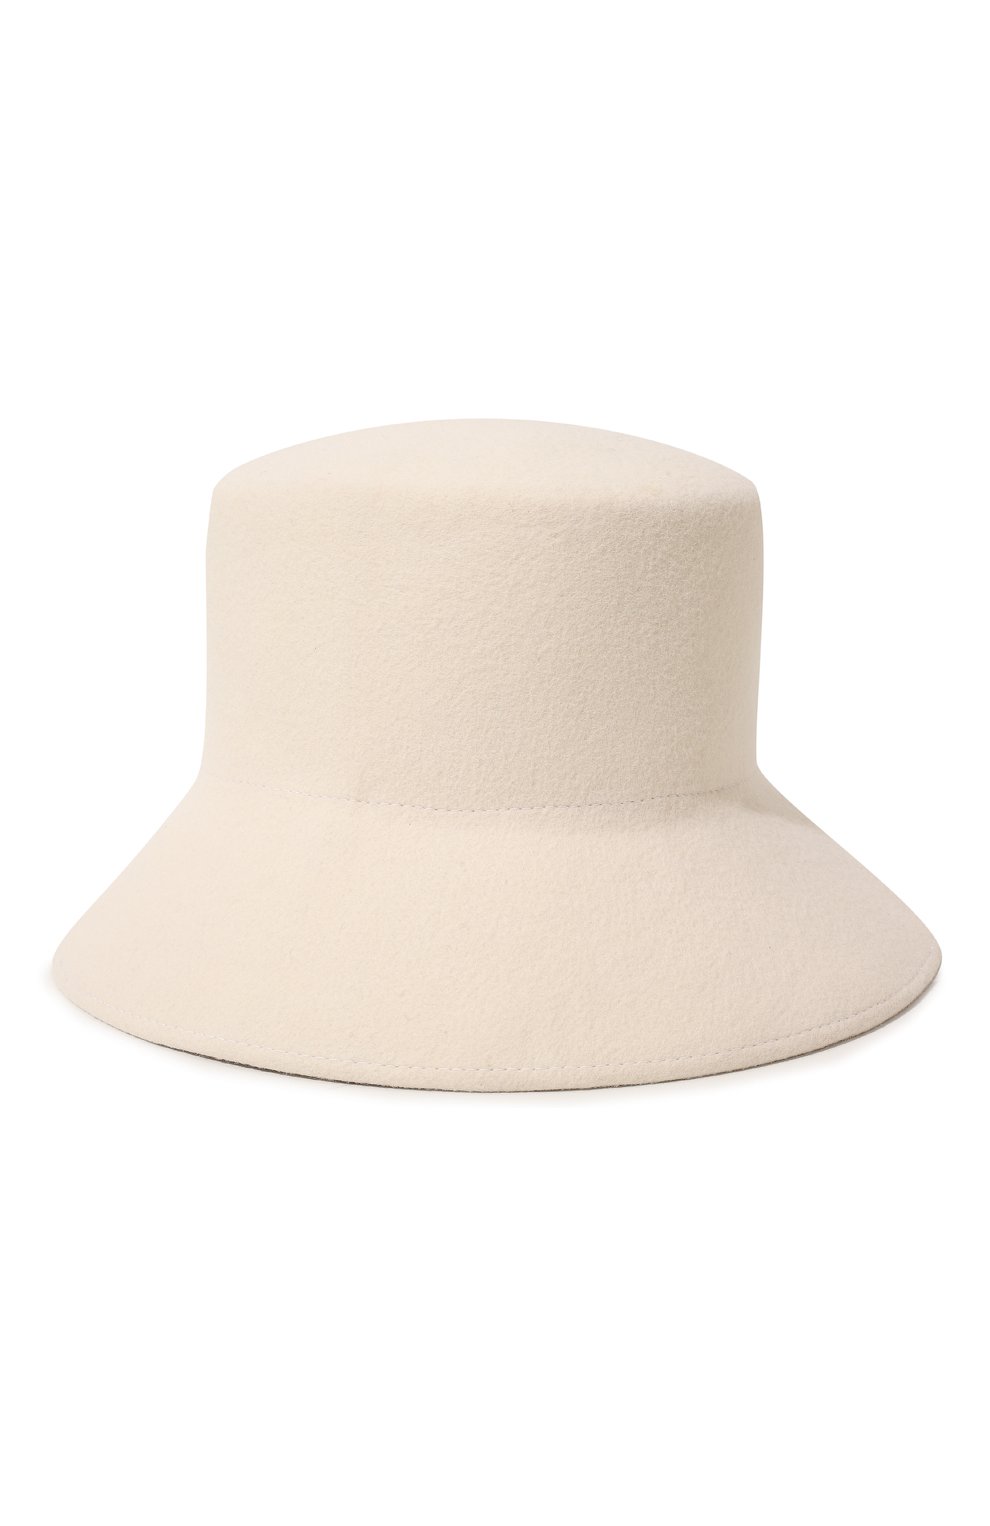 Женская шляпа panama COCOSHNICK HEADDRESS кремвого цвета, арт. panamabasic | Фото 1 (Материал: Текстиль, Шерсть)